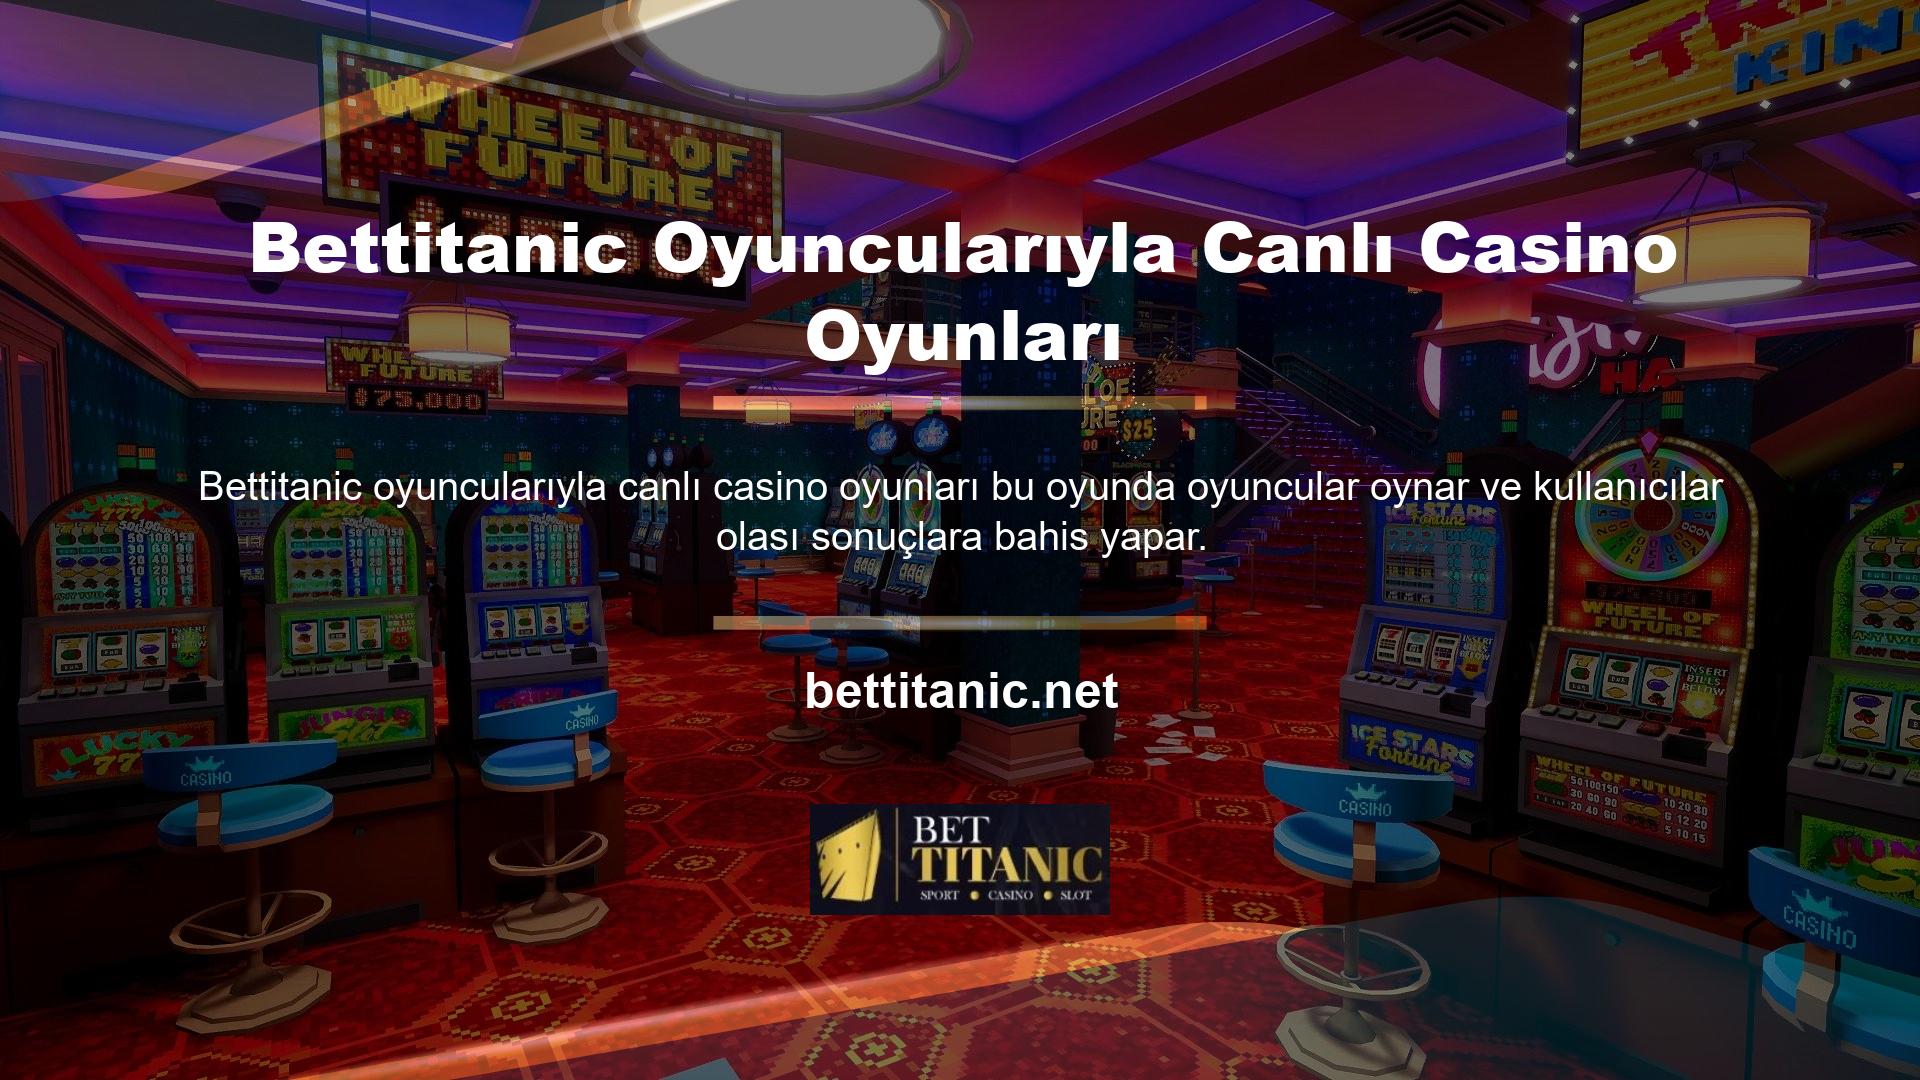 Bettitanic oyuncularının oynadığı canlı casino oyunlarında, sonuç belli olduktan sonra kazanmanız durumunda paranız doğrudan hesabınıza aktarılacaktır